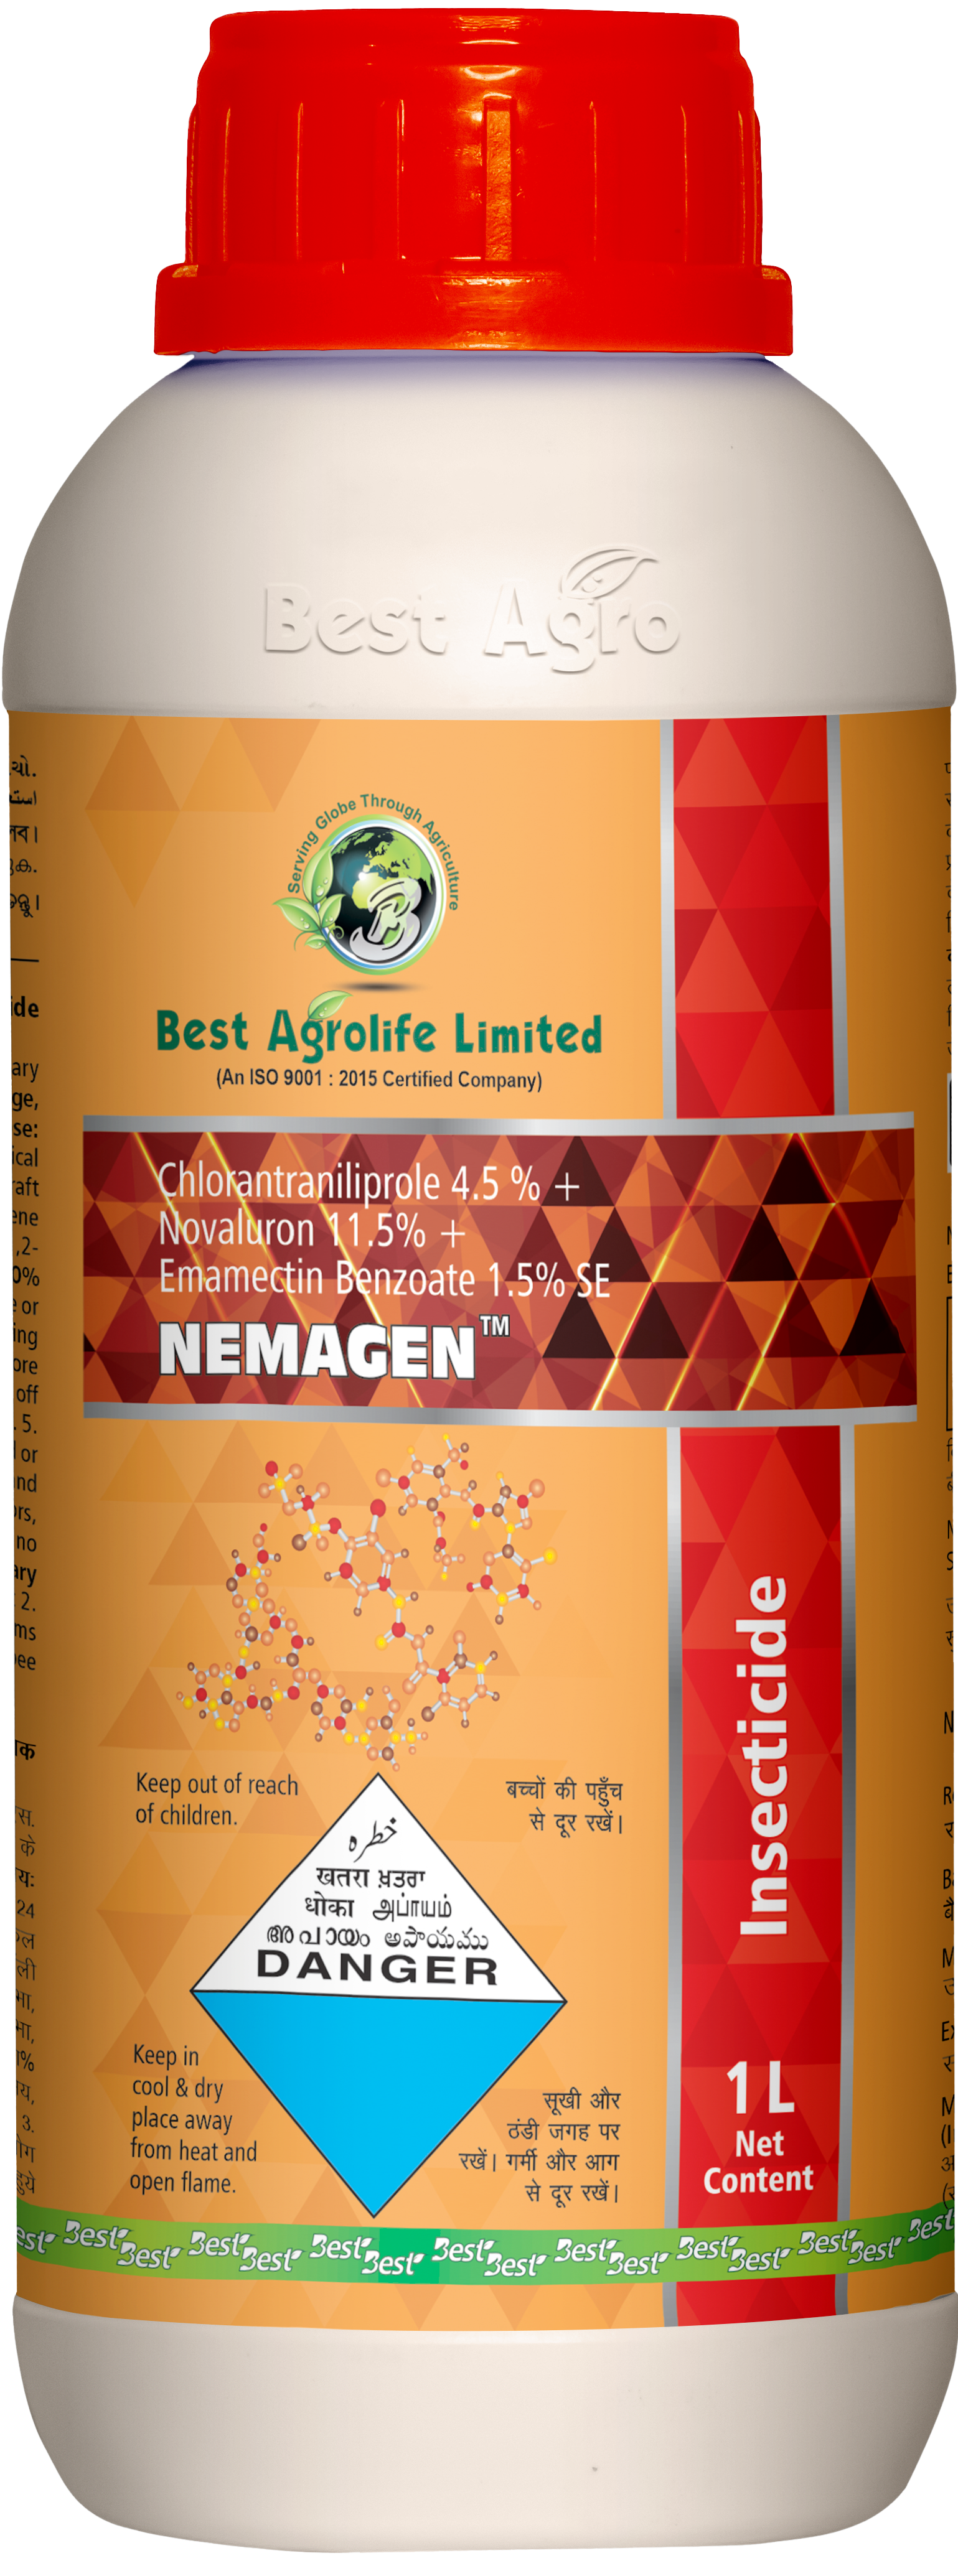 Best Agrolife Ltd Announces Launch of Under Patent ‘Nemagen’ Following FIM Registration